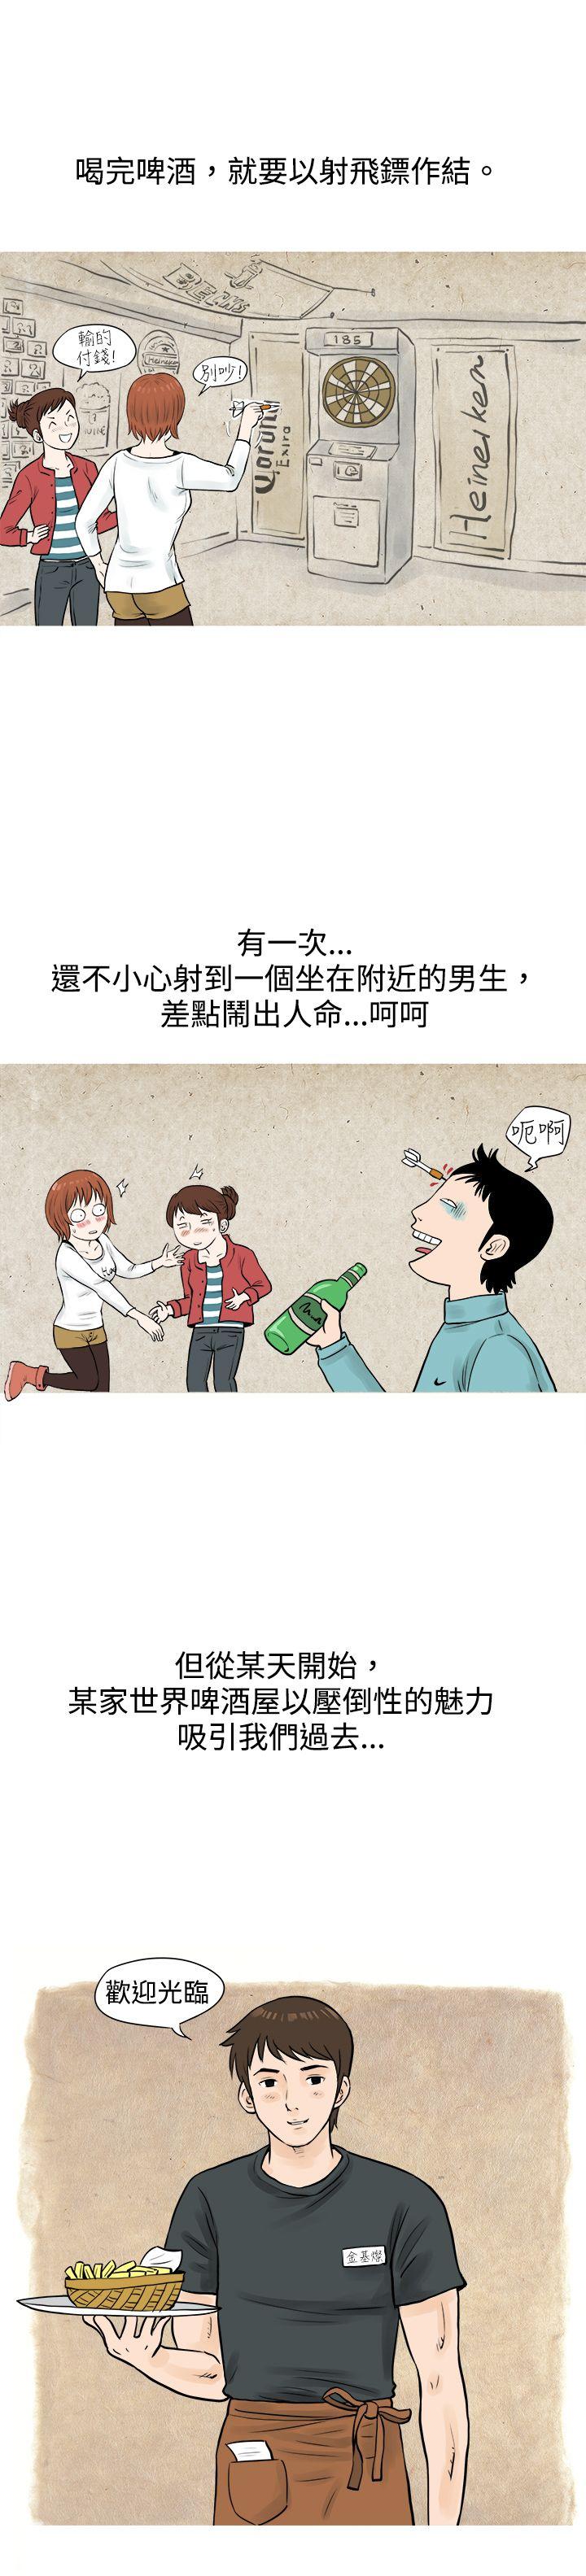 韩国污漫画 秘密Story 在啤酒屋遇到的工读生（上） 2